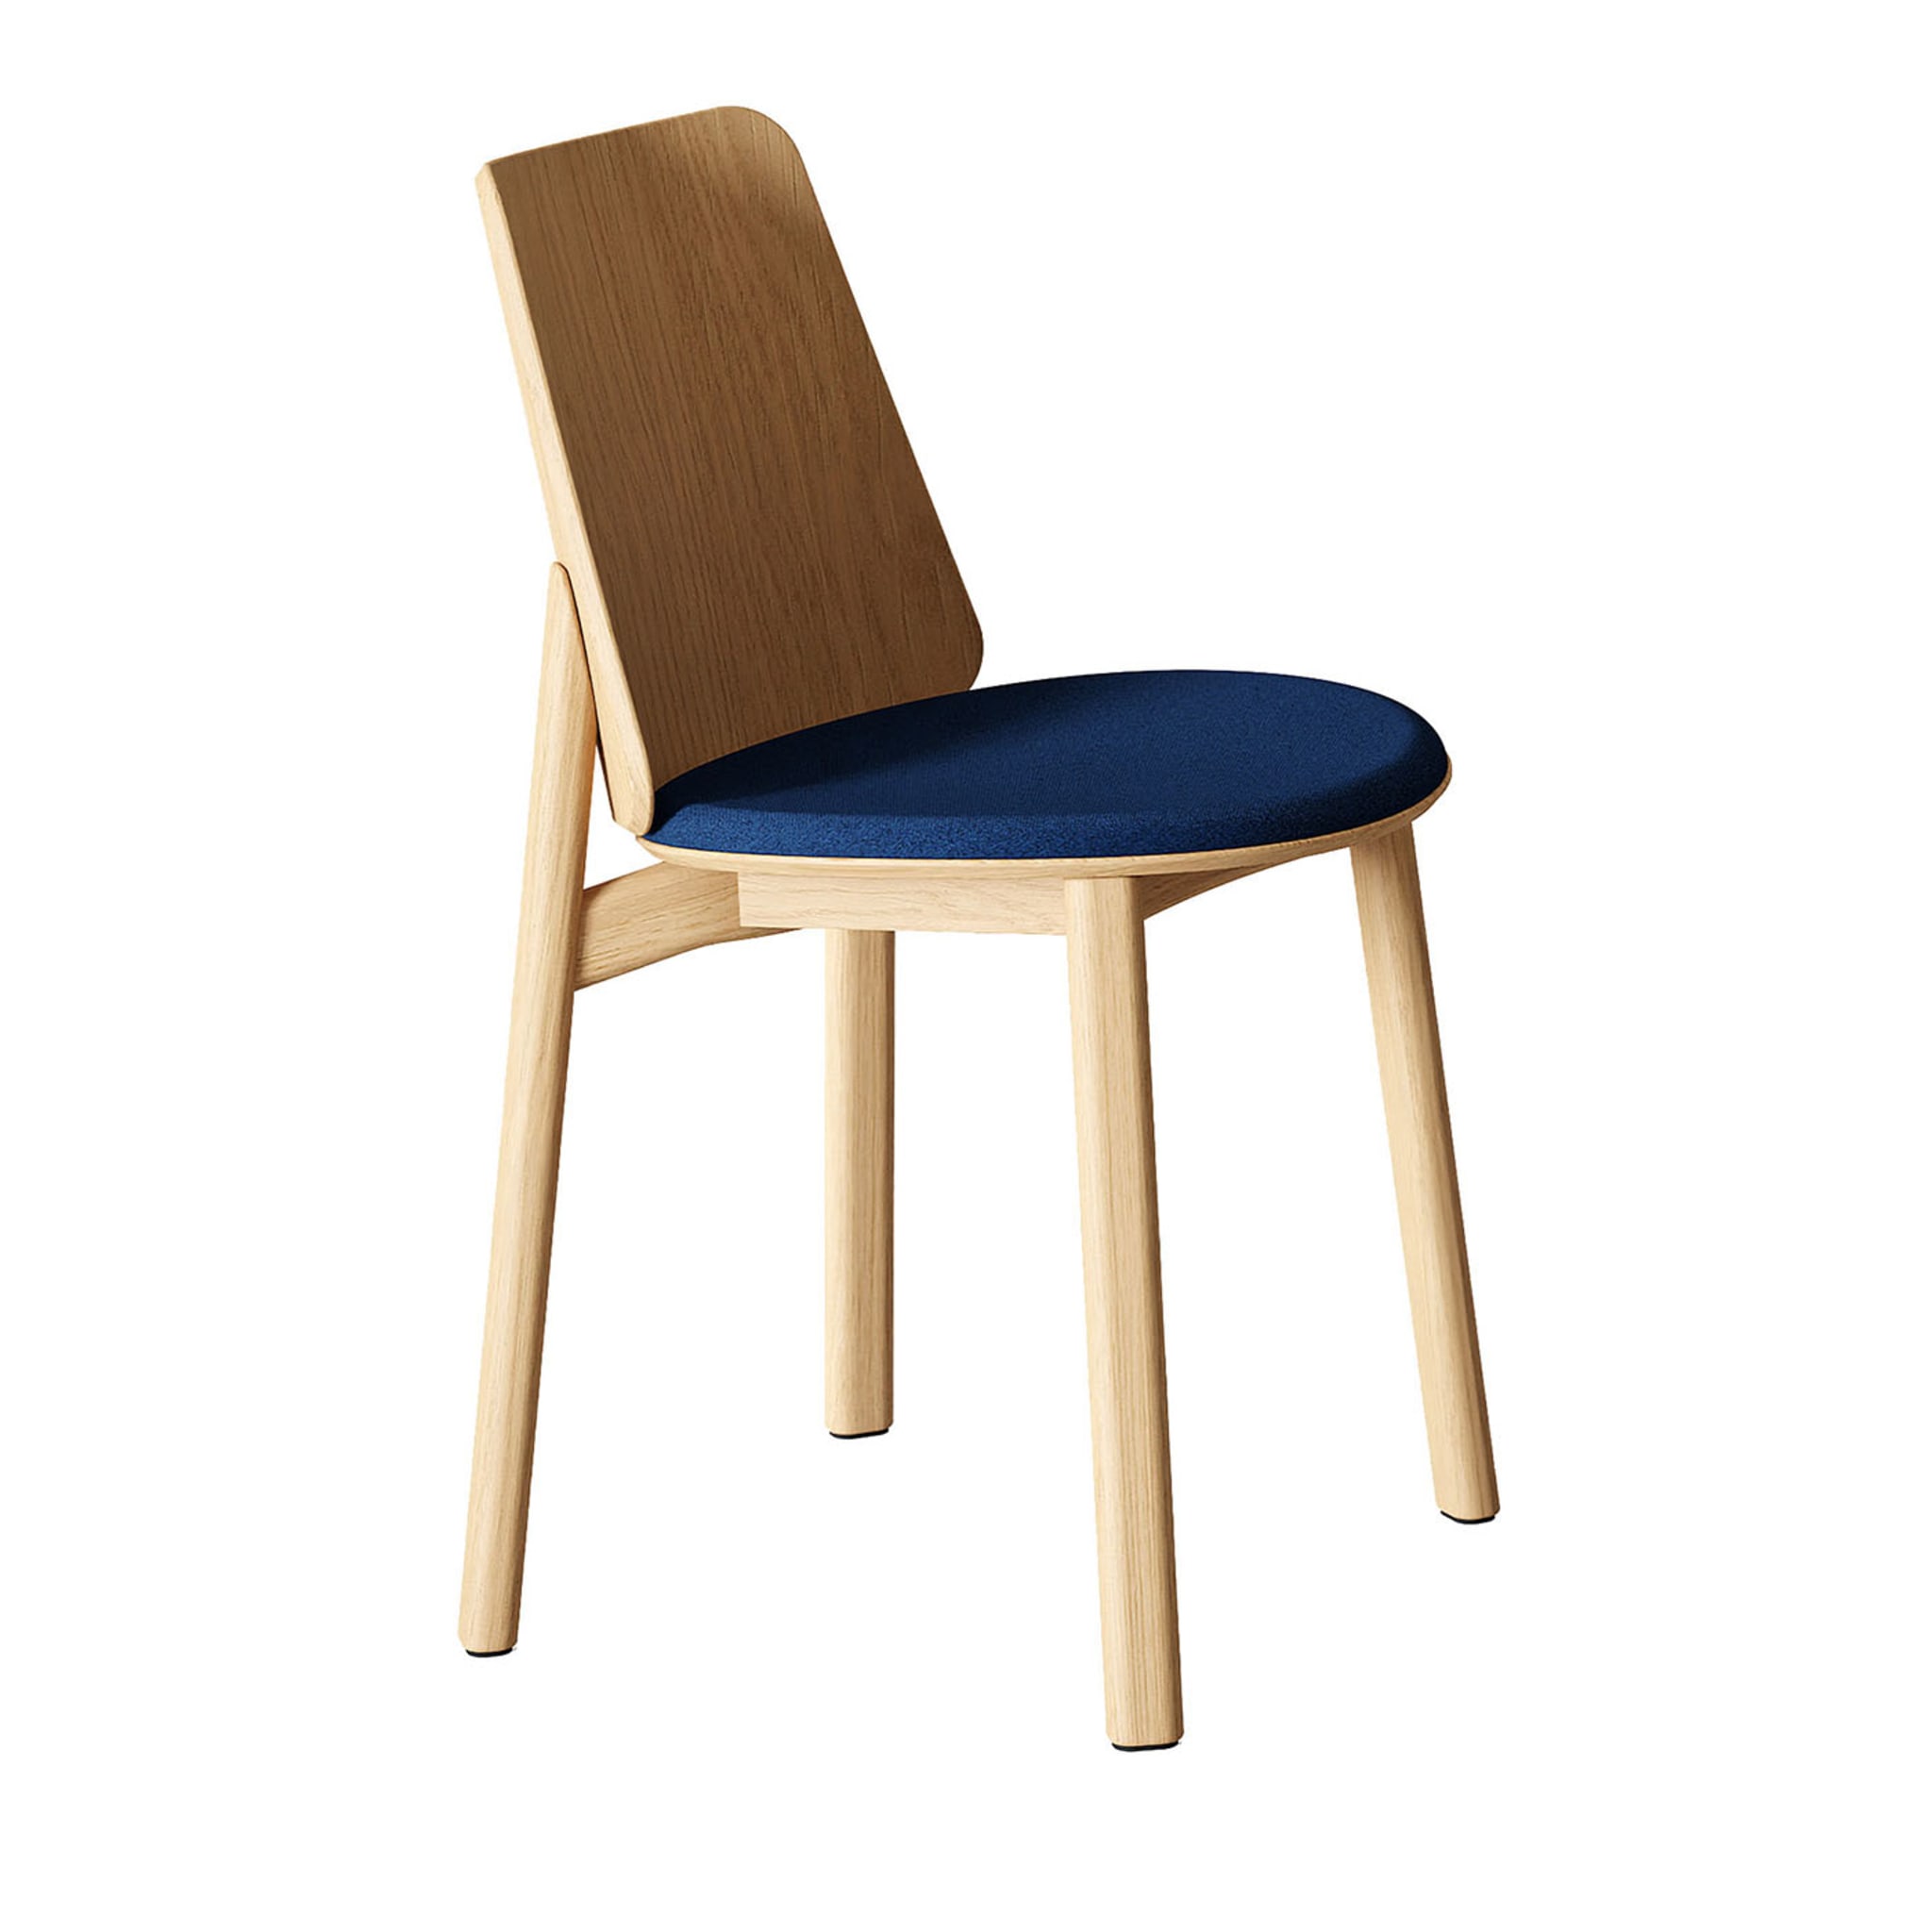 Billa Beige & Blue Chair by Claudio Avetta - Main view